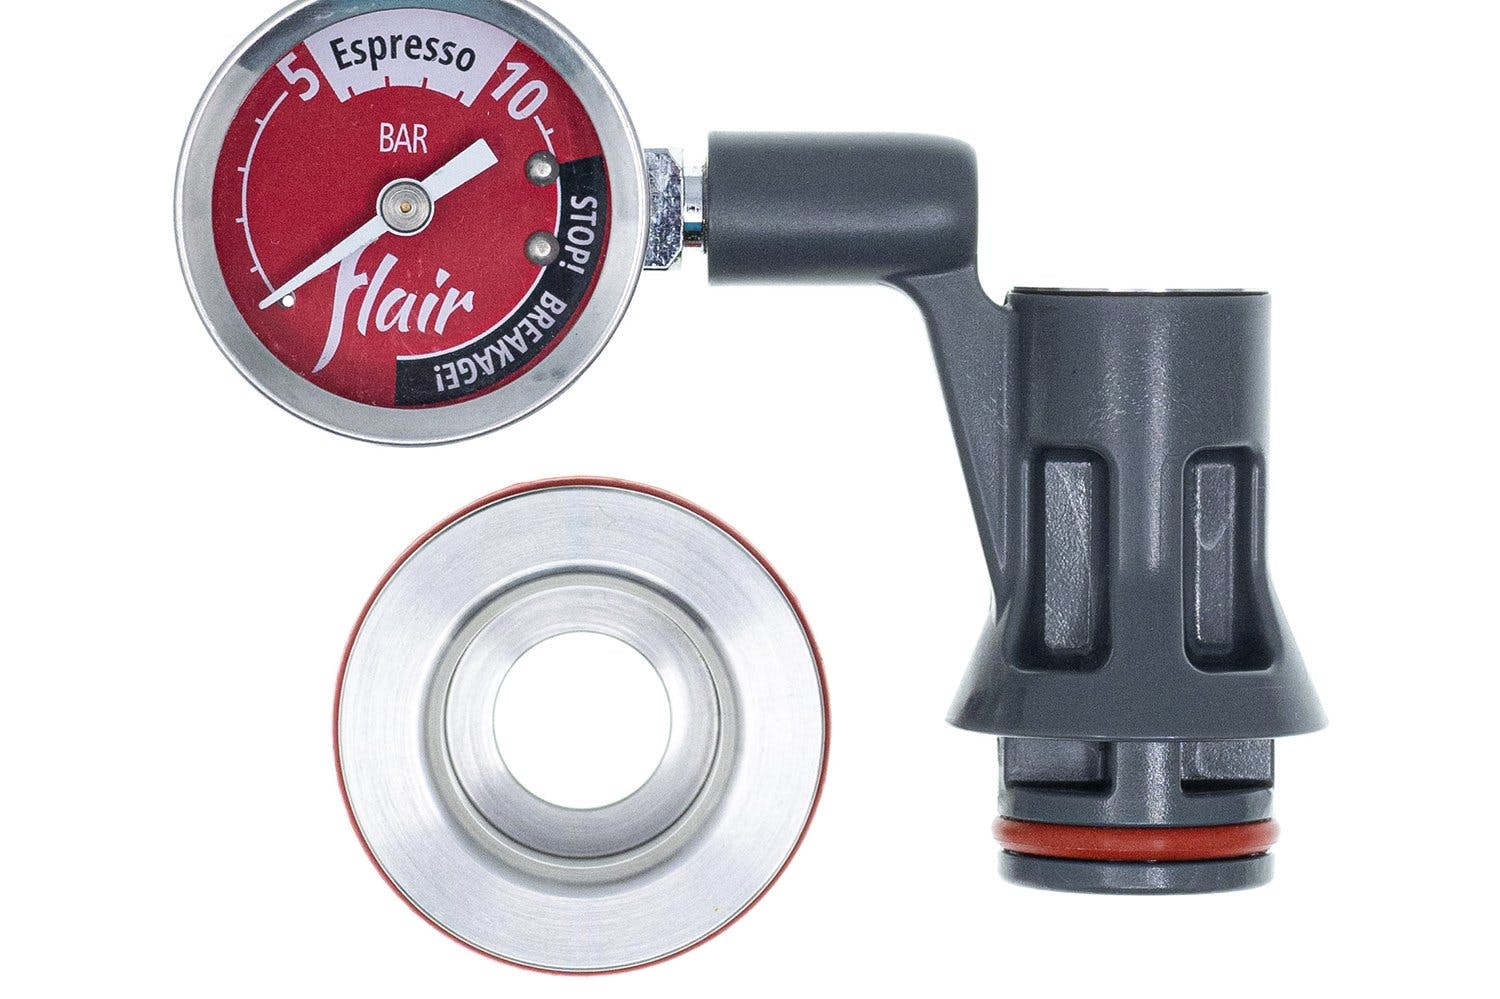 Flair Espresso Flair Signature Espresso Maker with Pressure Kit